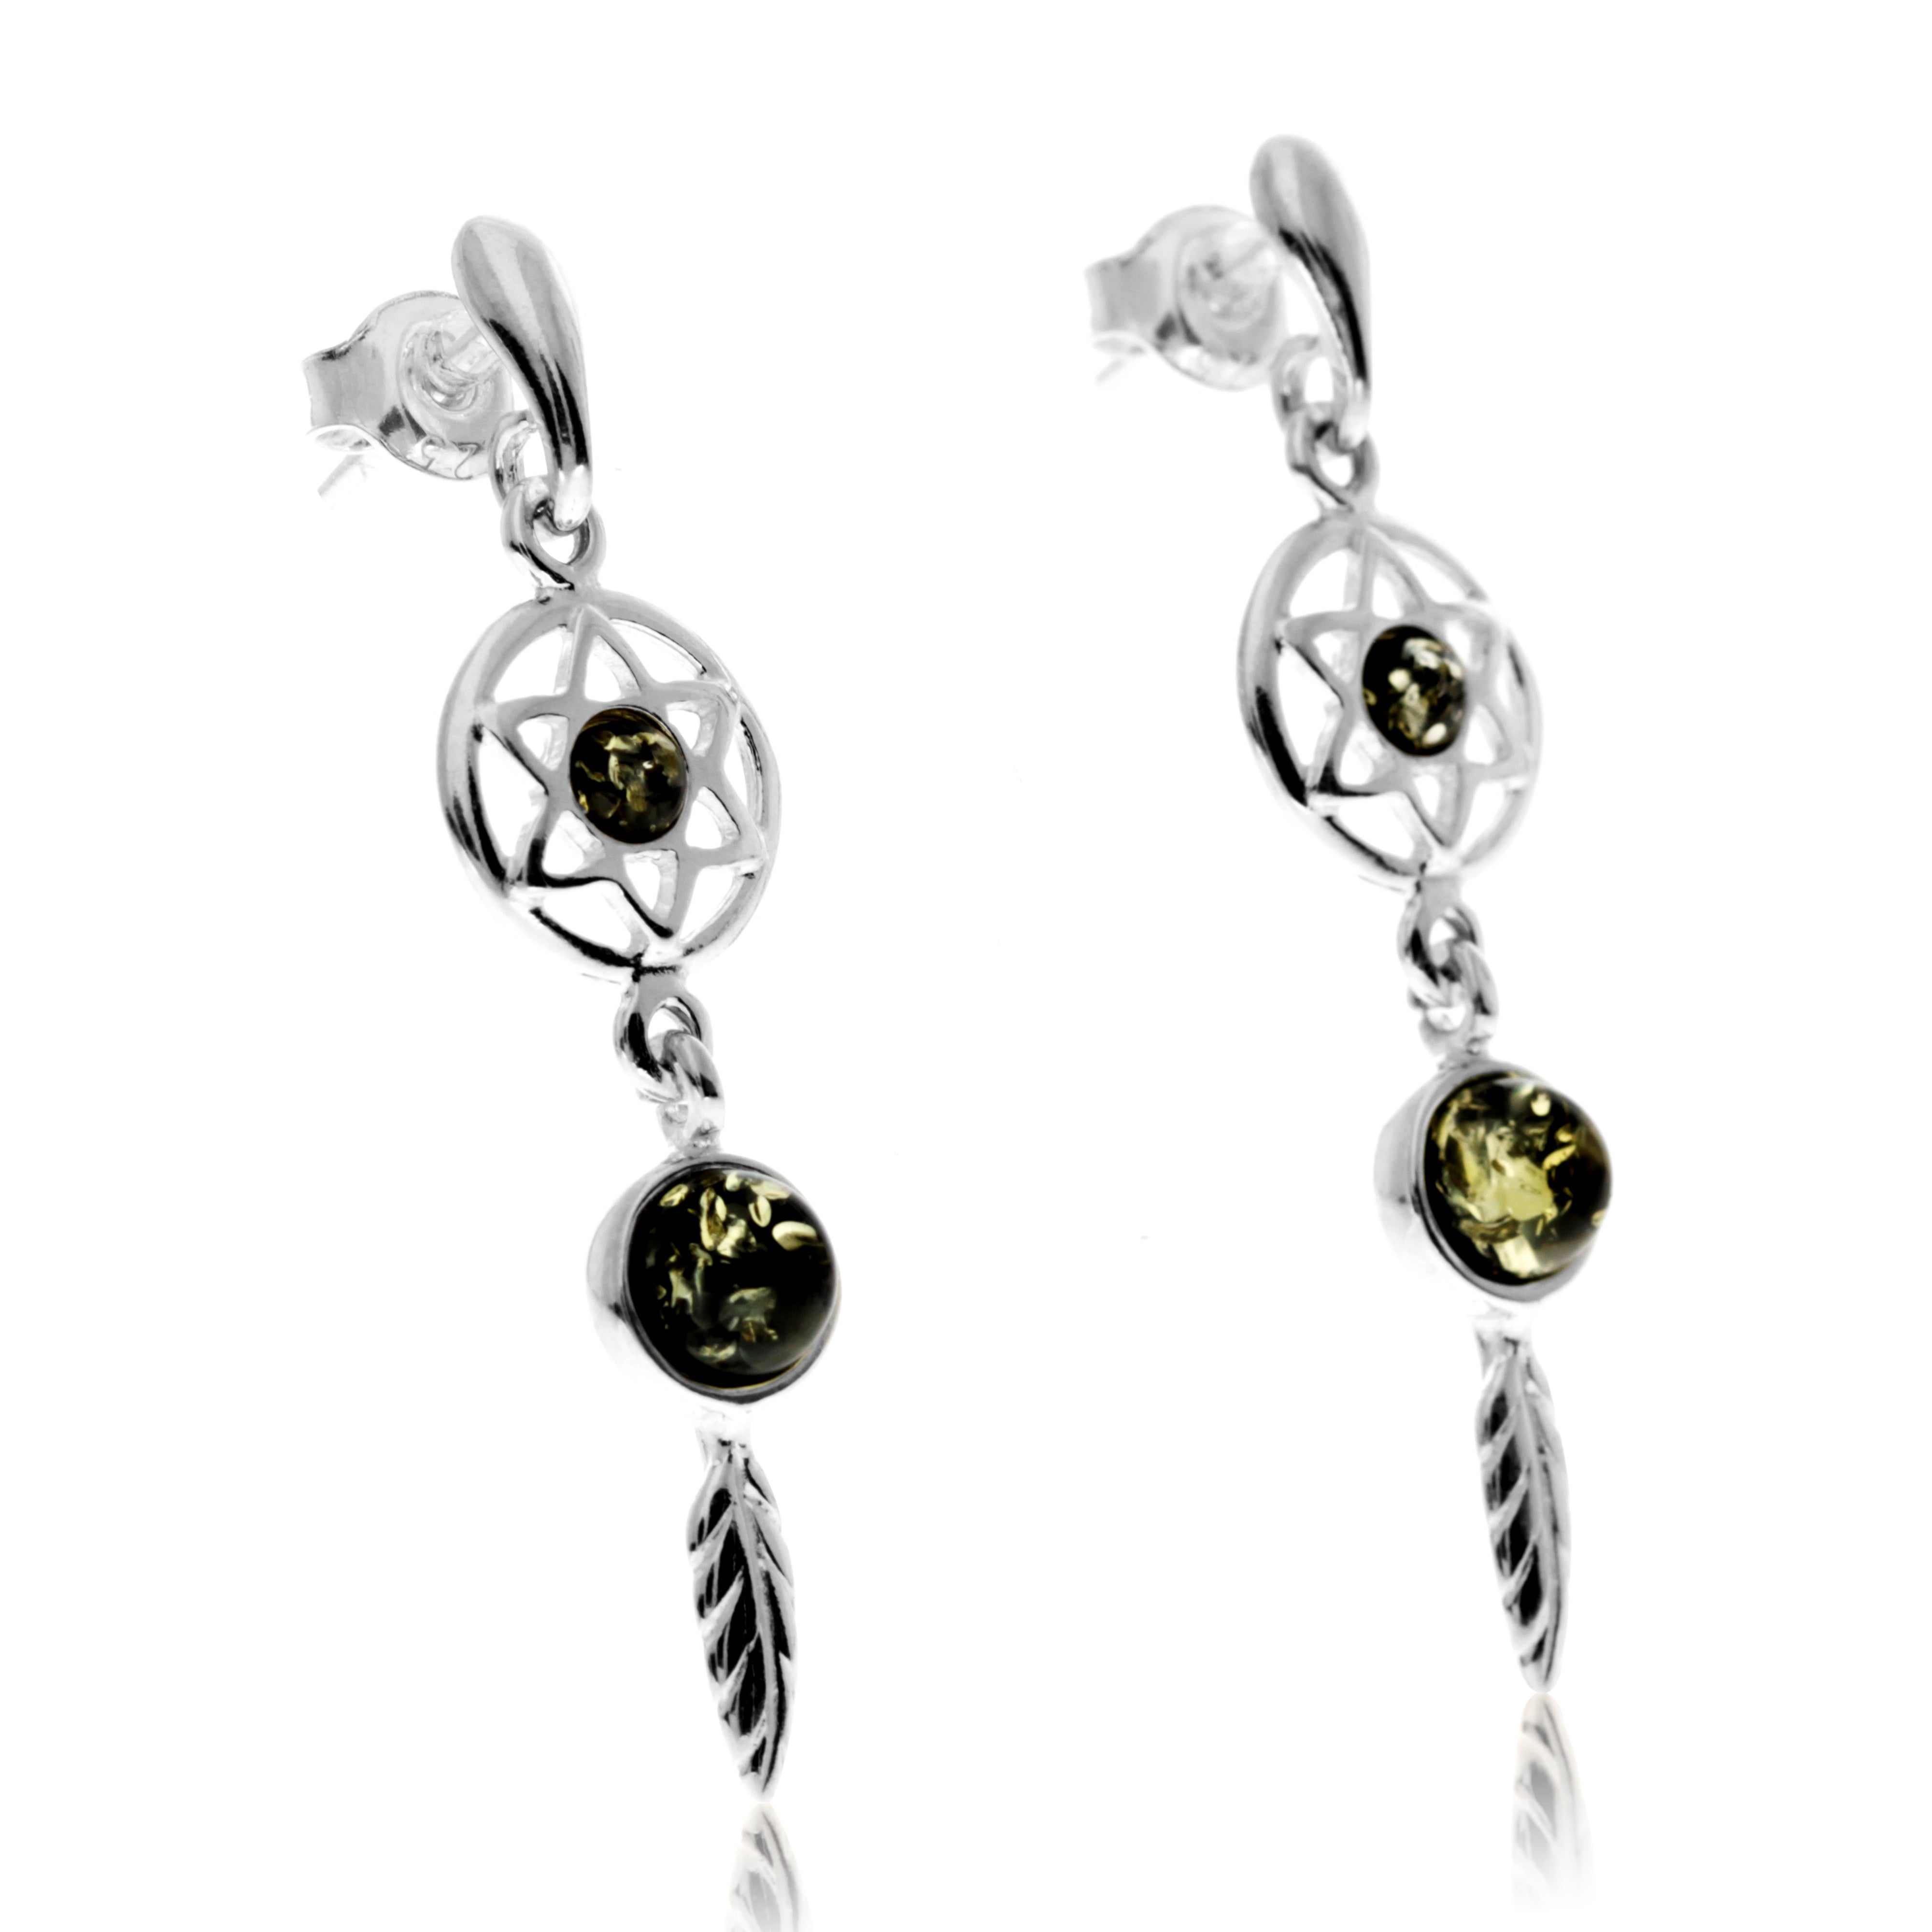 925 Sterling Silver & Genuine Baltic Amber Dreamcatcher Drop Earrings - GL1029